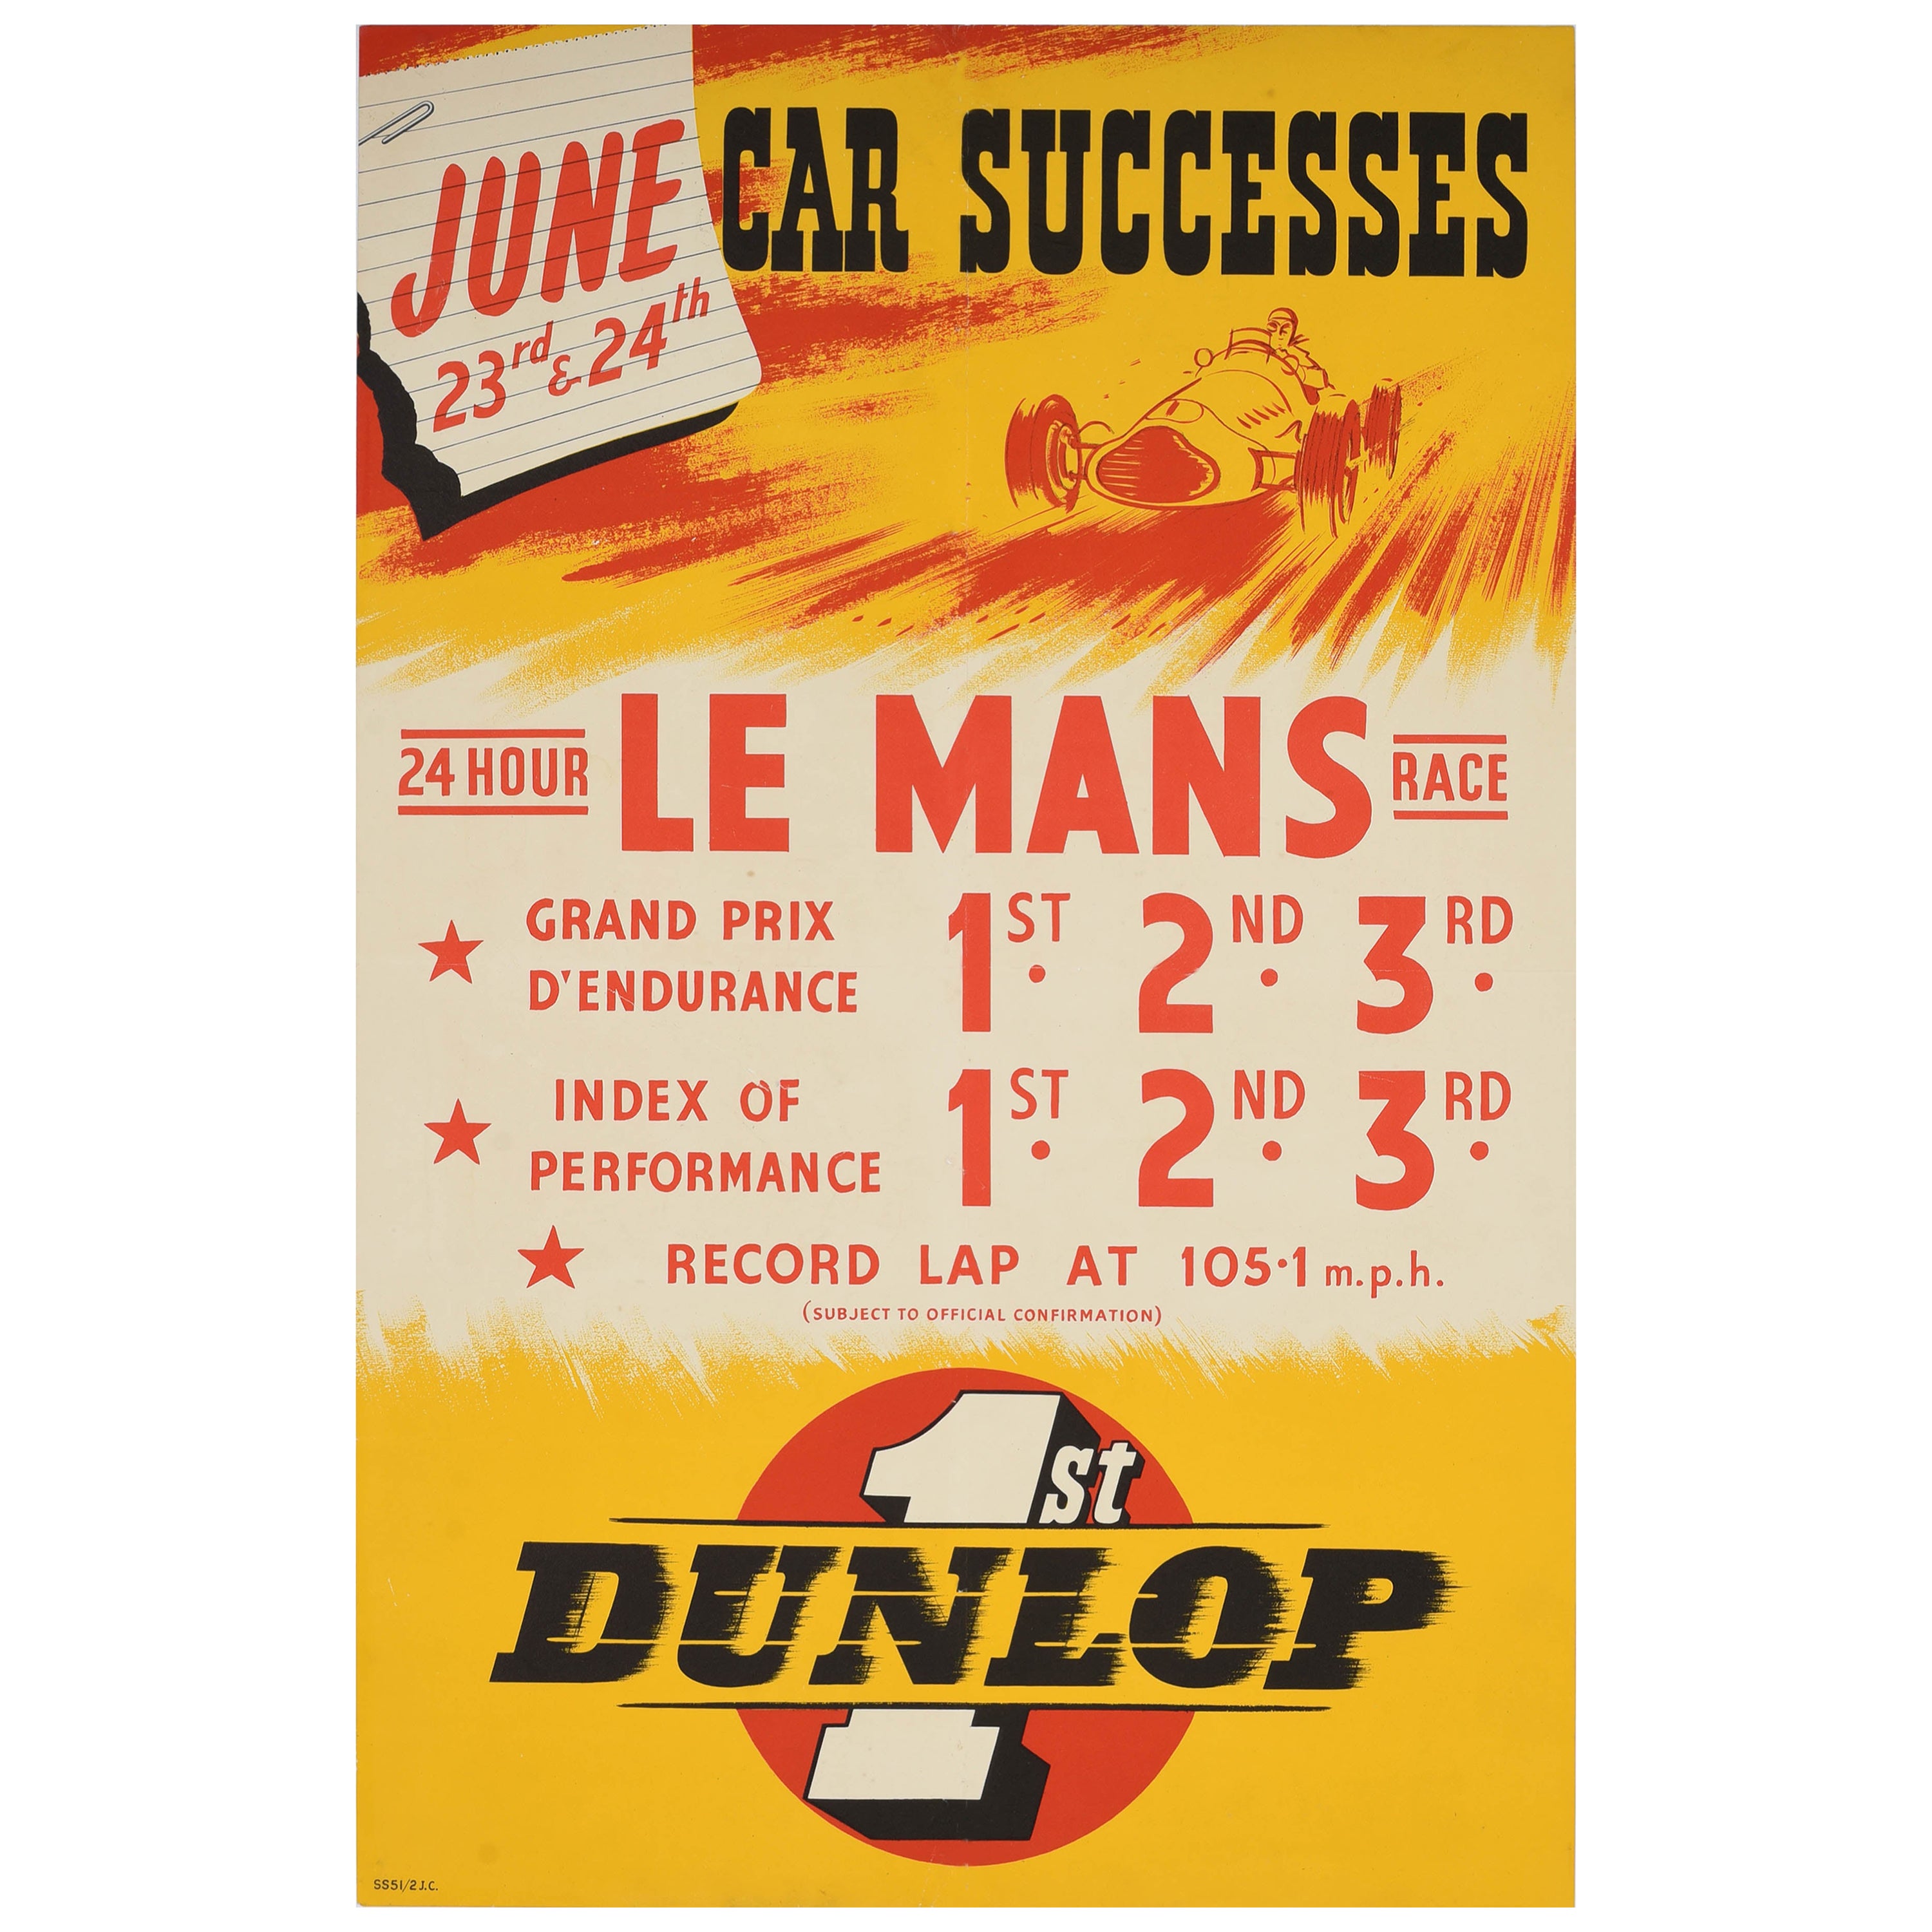 Original Vintage Motorsport Sponsorship Poster 24 Hour Le Mans Race Dunlop Car